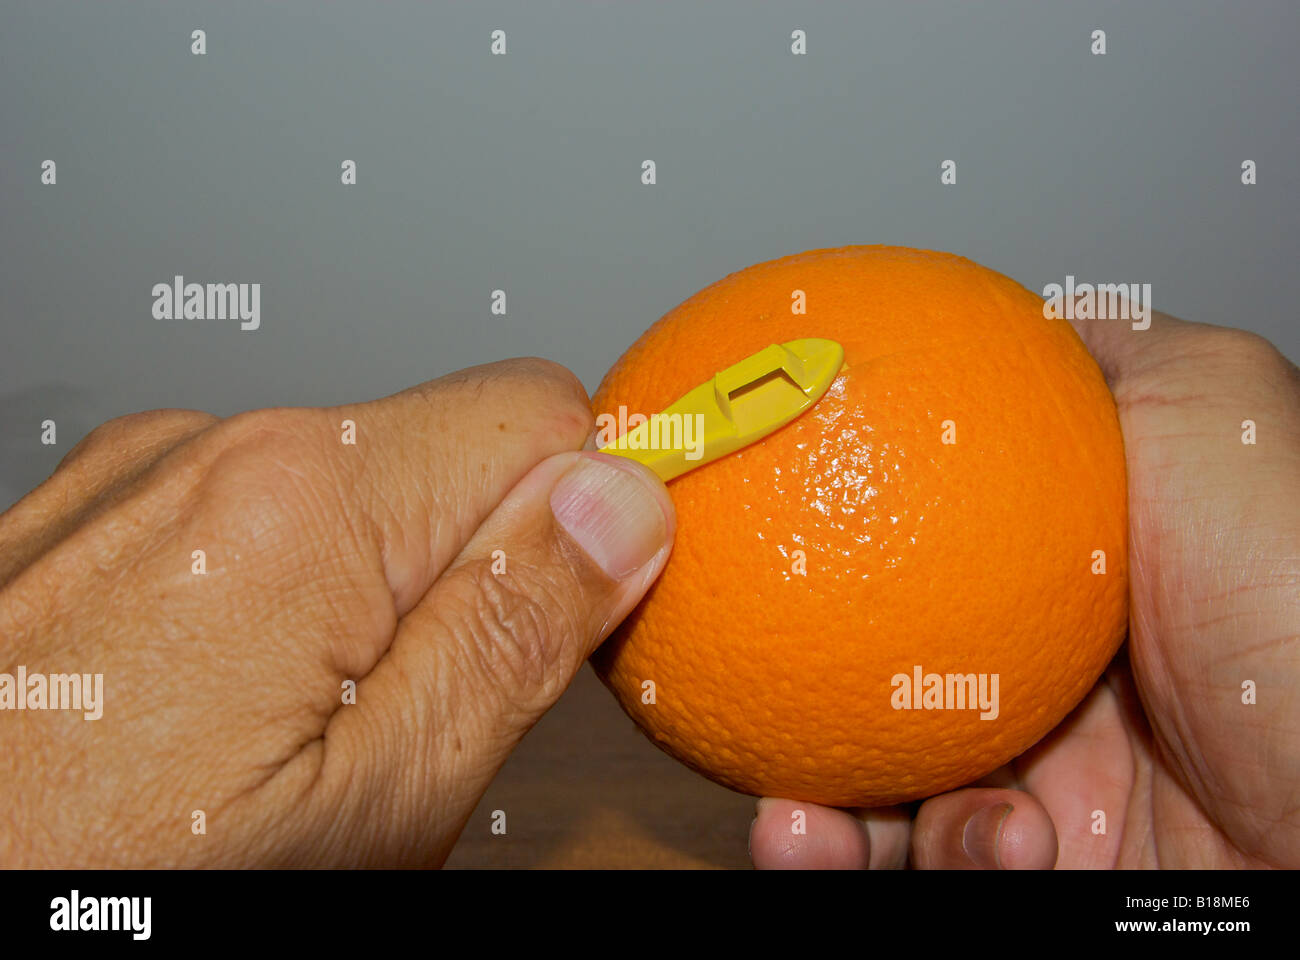 Sbucciare un arancia segnando la crosta su entrambi i lati dell